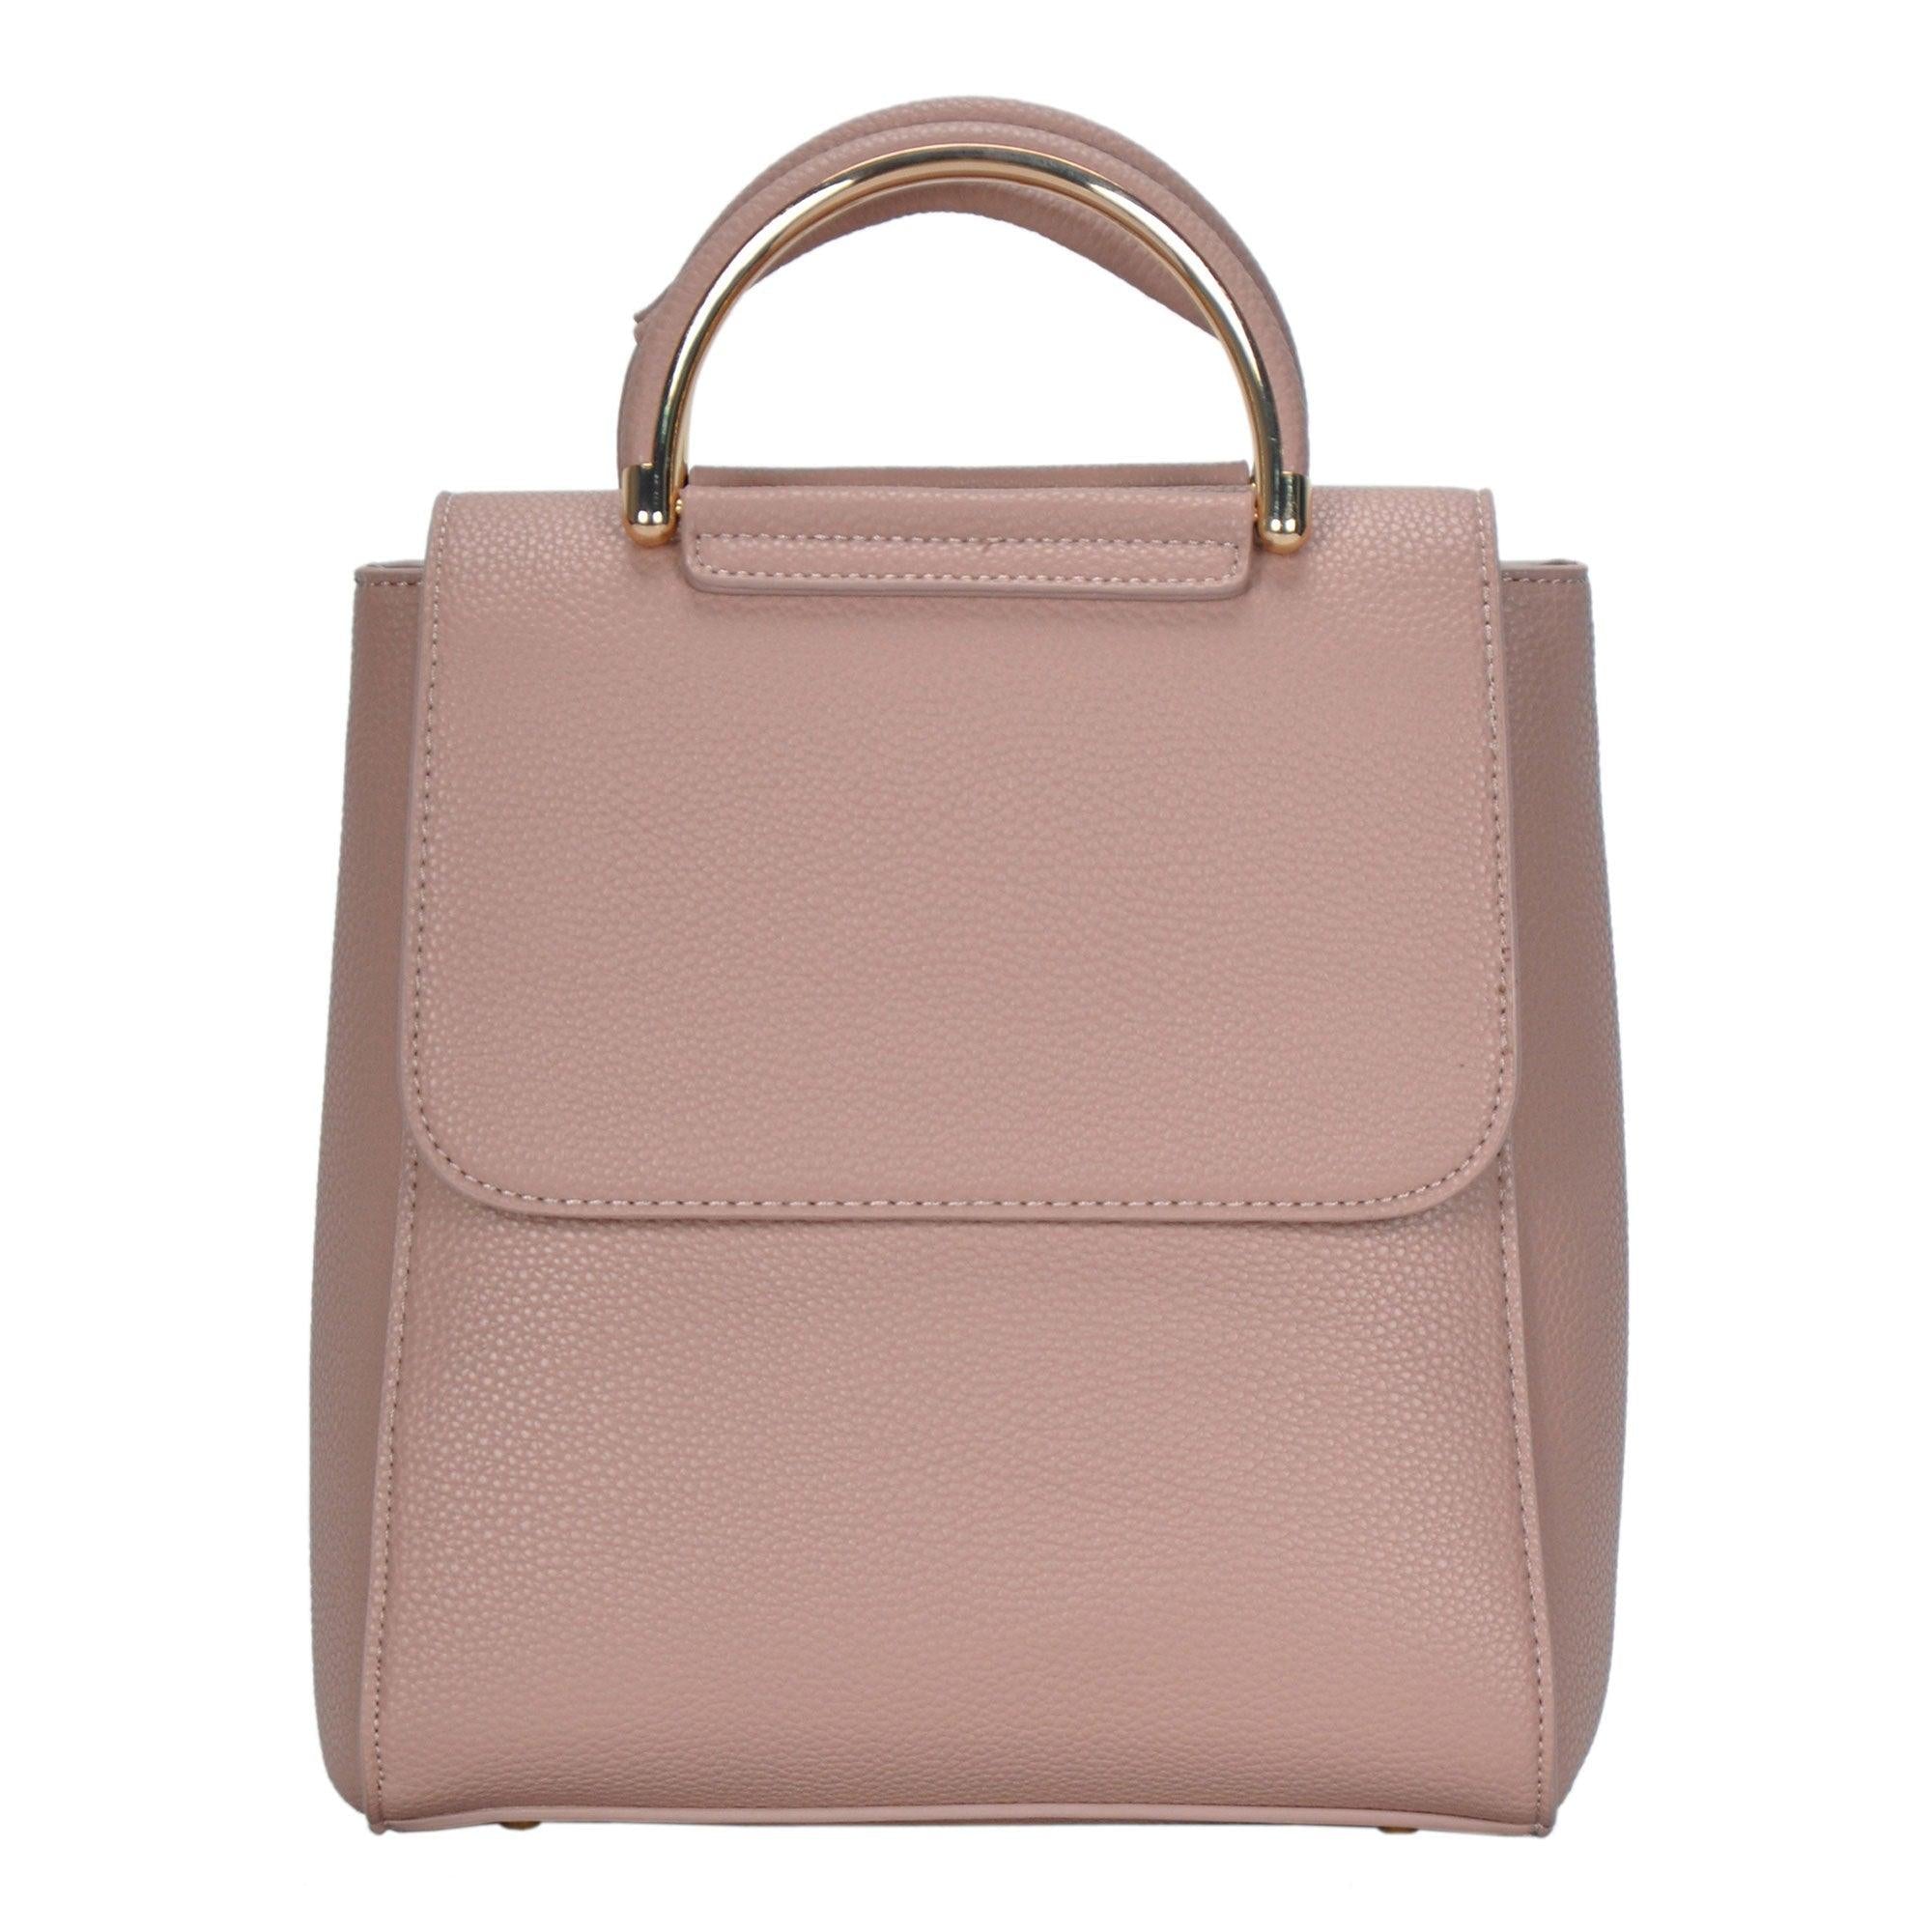 Trending now: the Blush Handbag - Pretty Little Details